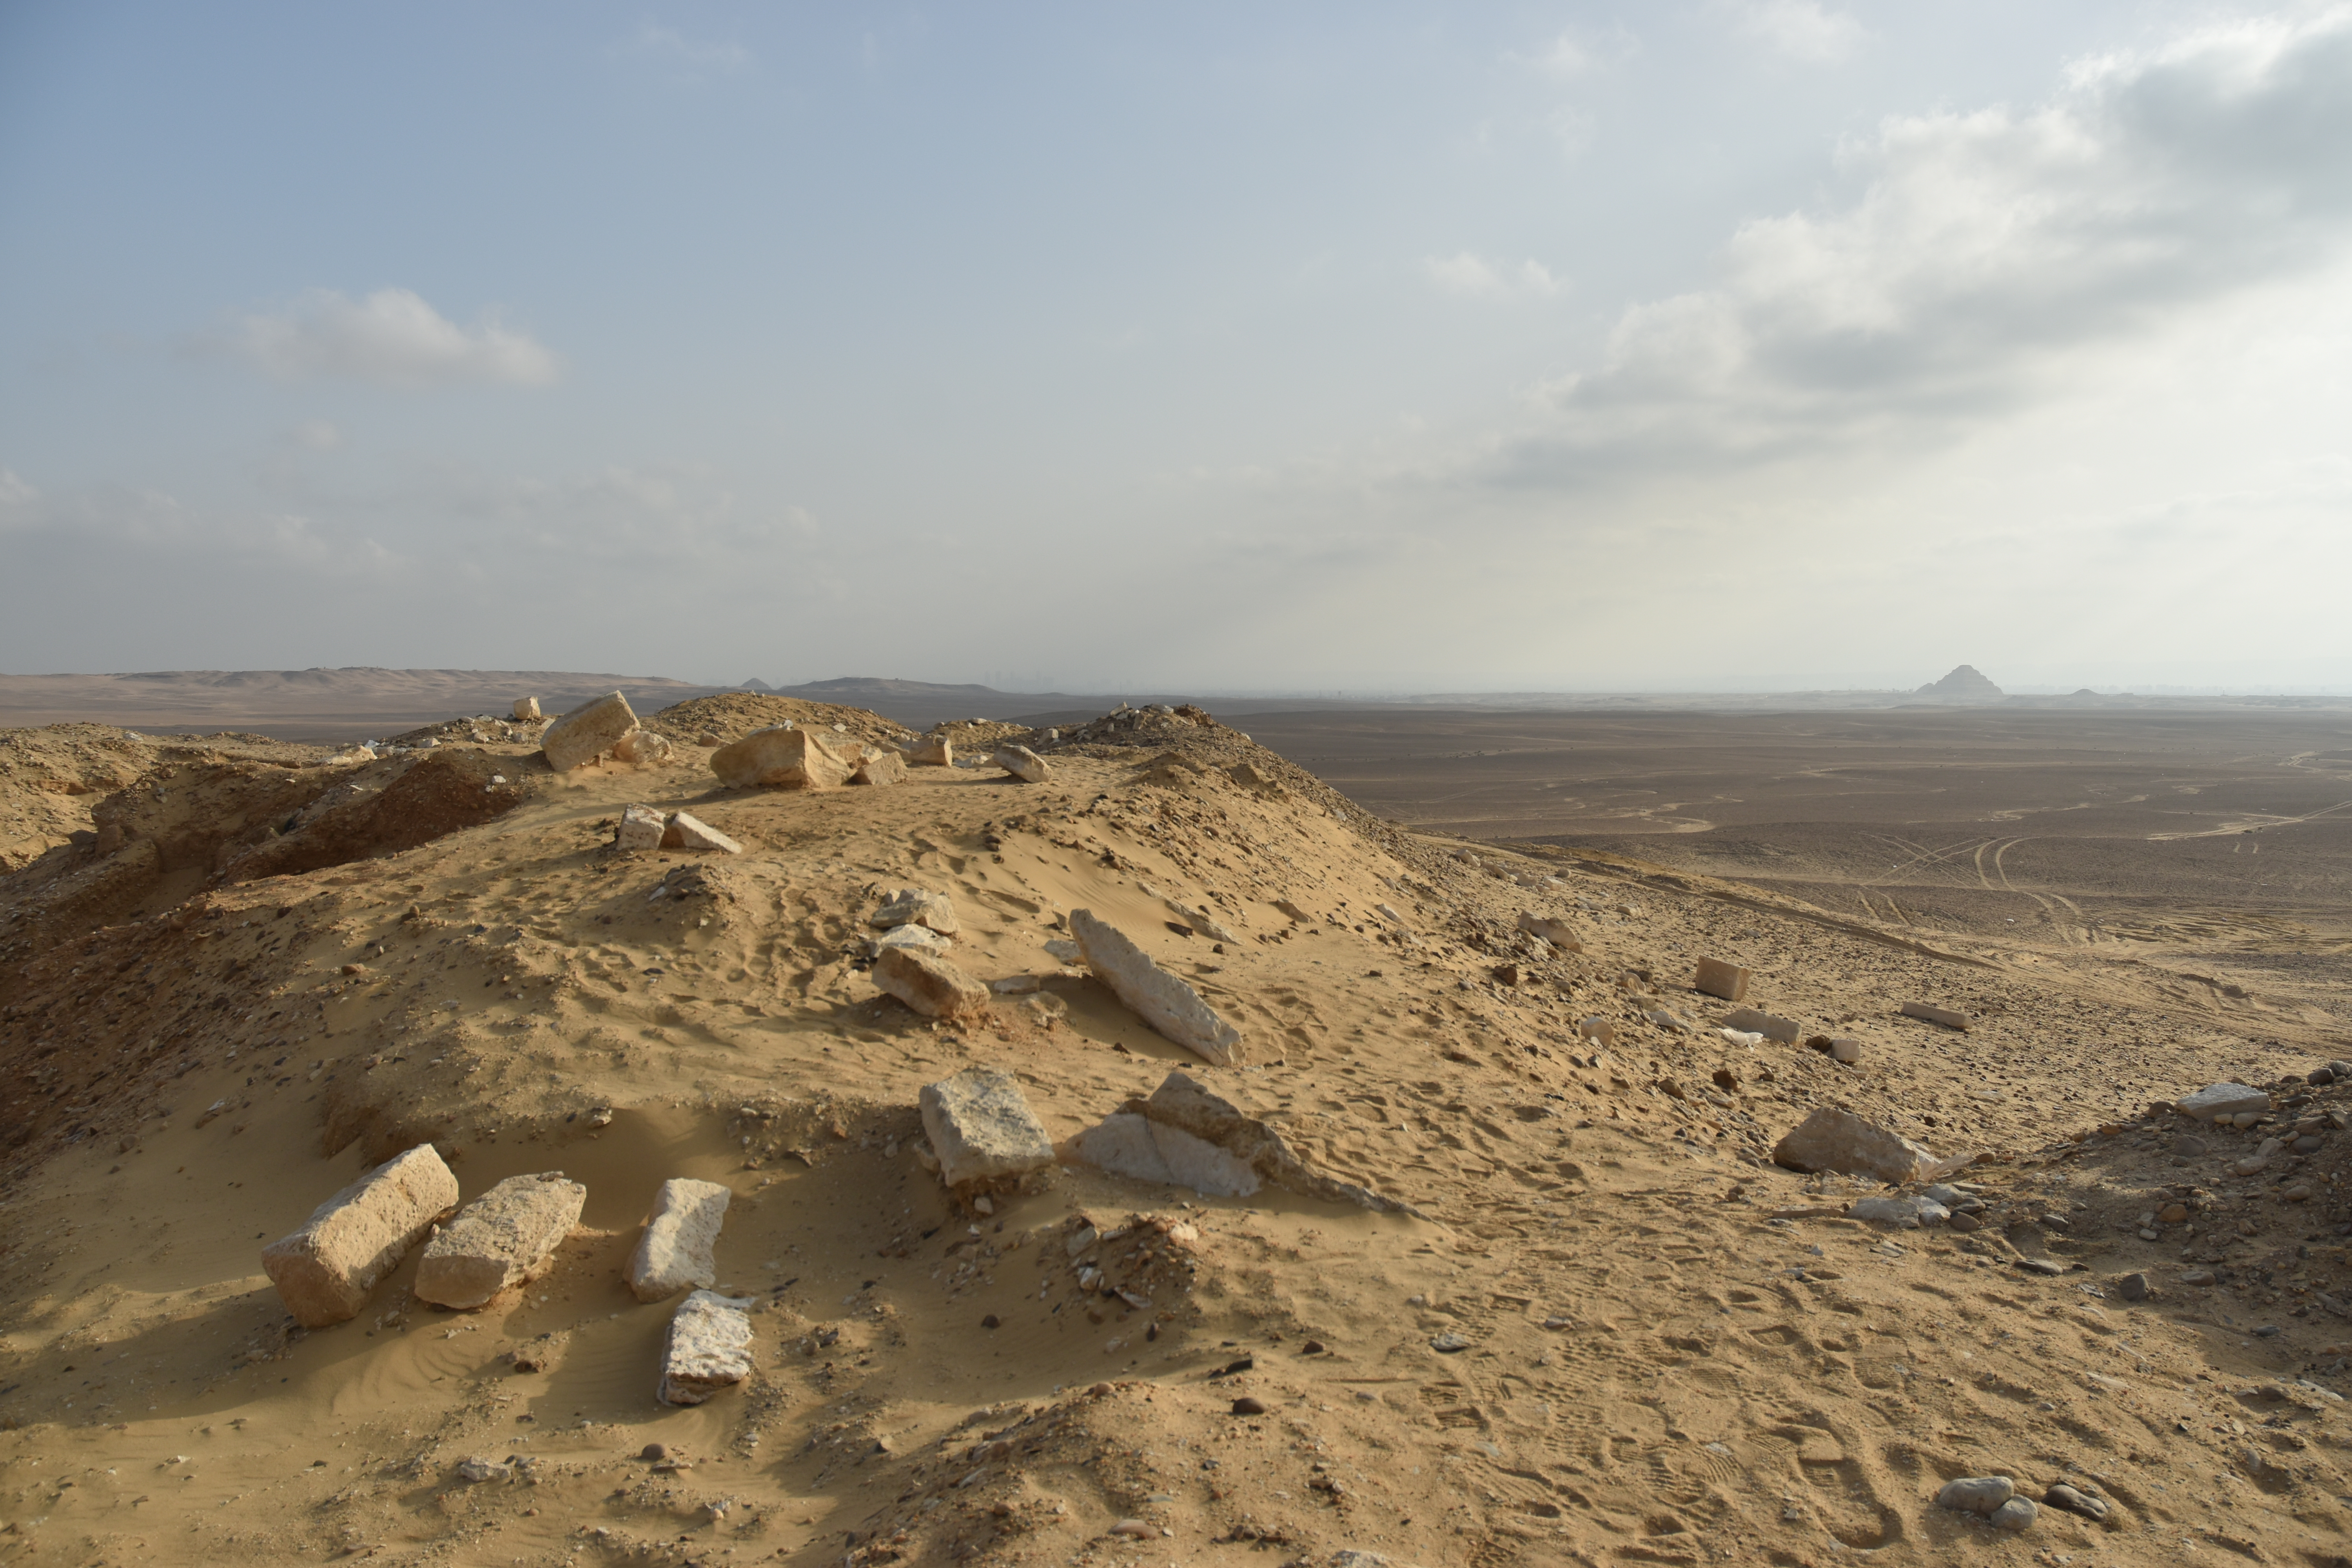 De necropolis van Sakkara ligt in een uithoek van de woestijn